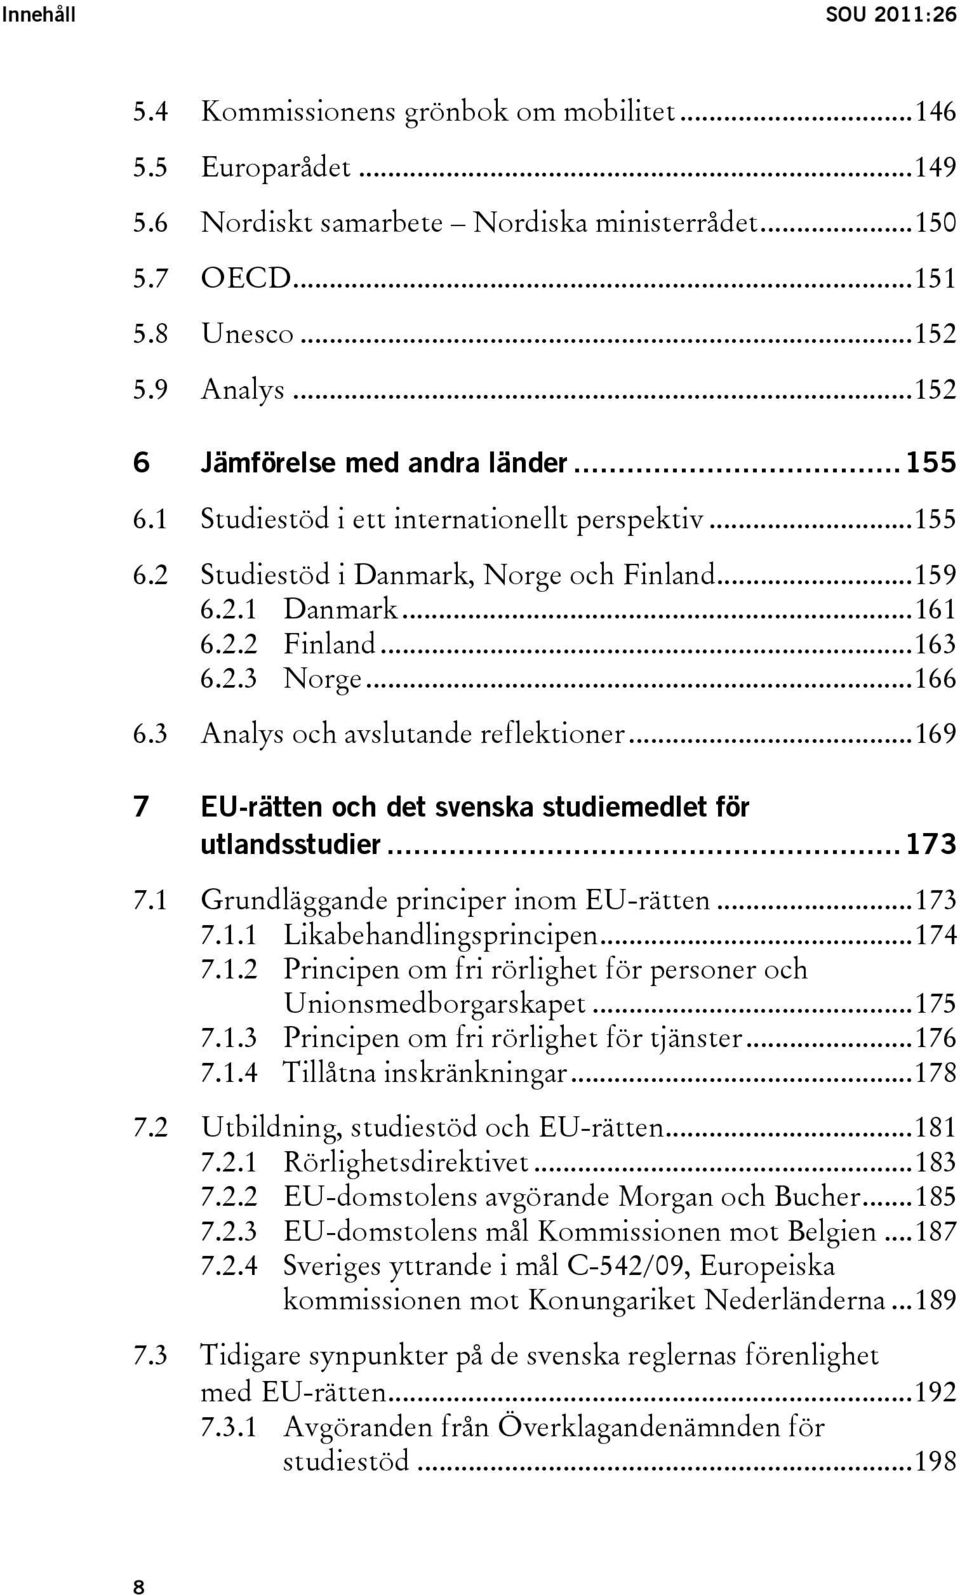 ..166 6.3 Analys och avslutande reflektioner...169 7 EU-rätten och det svenska studiemedlet för utlandsstudier...173 7.1 Grundläggande principer inom EU-rätten...173 7.1.1 Likabehandlingsprincipen.